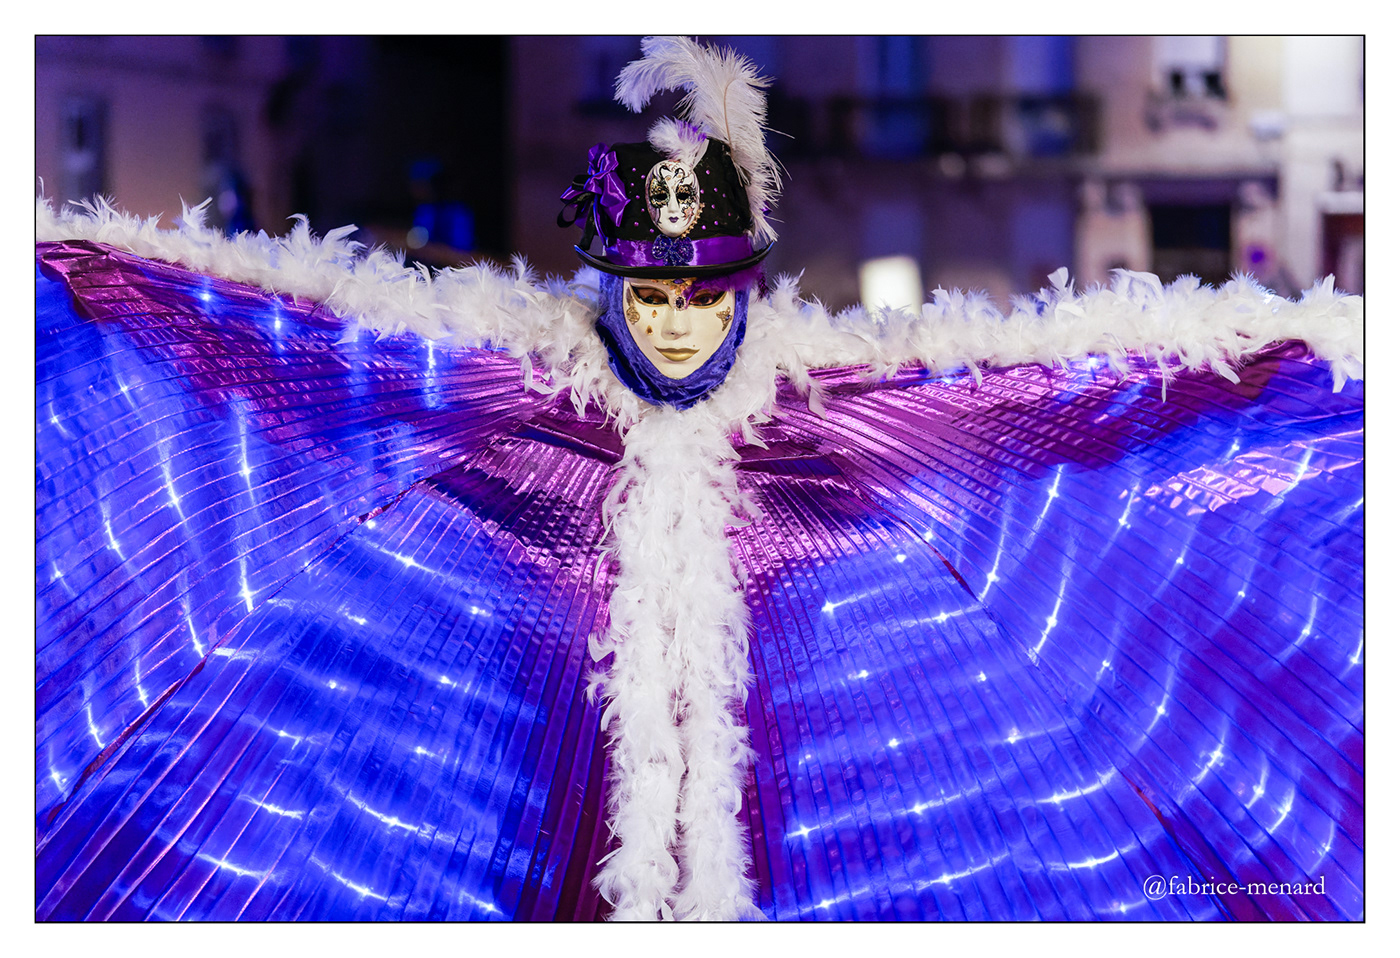 Carnaval Masques costume Masque portrait costumes fête de rue Vosges remiremont Carnaval vénitien